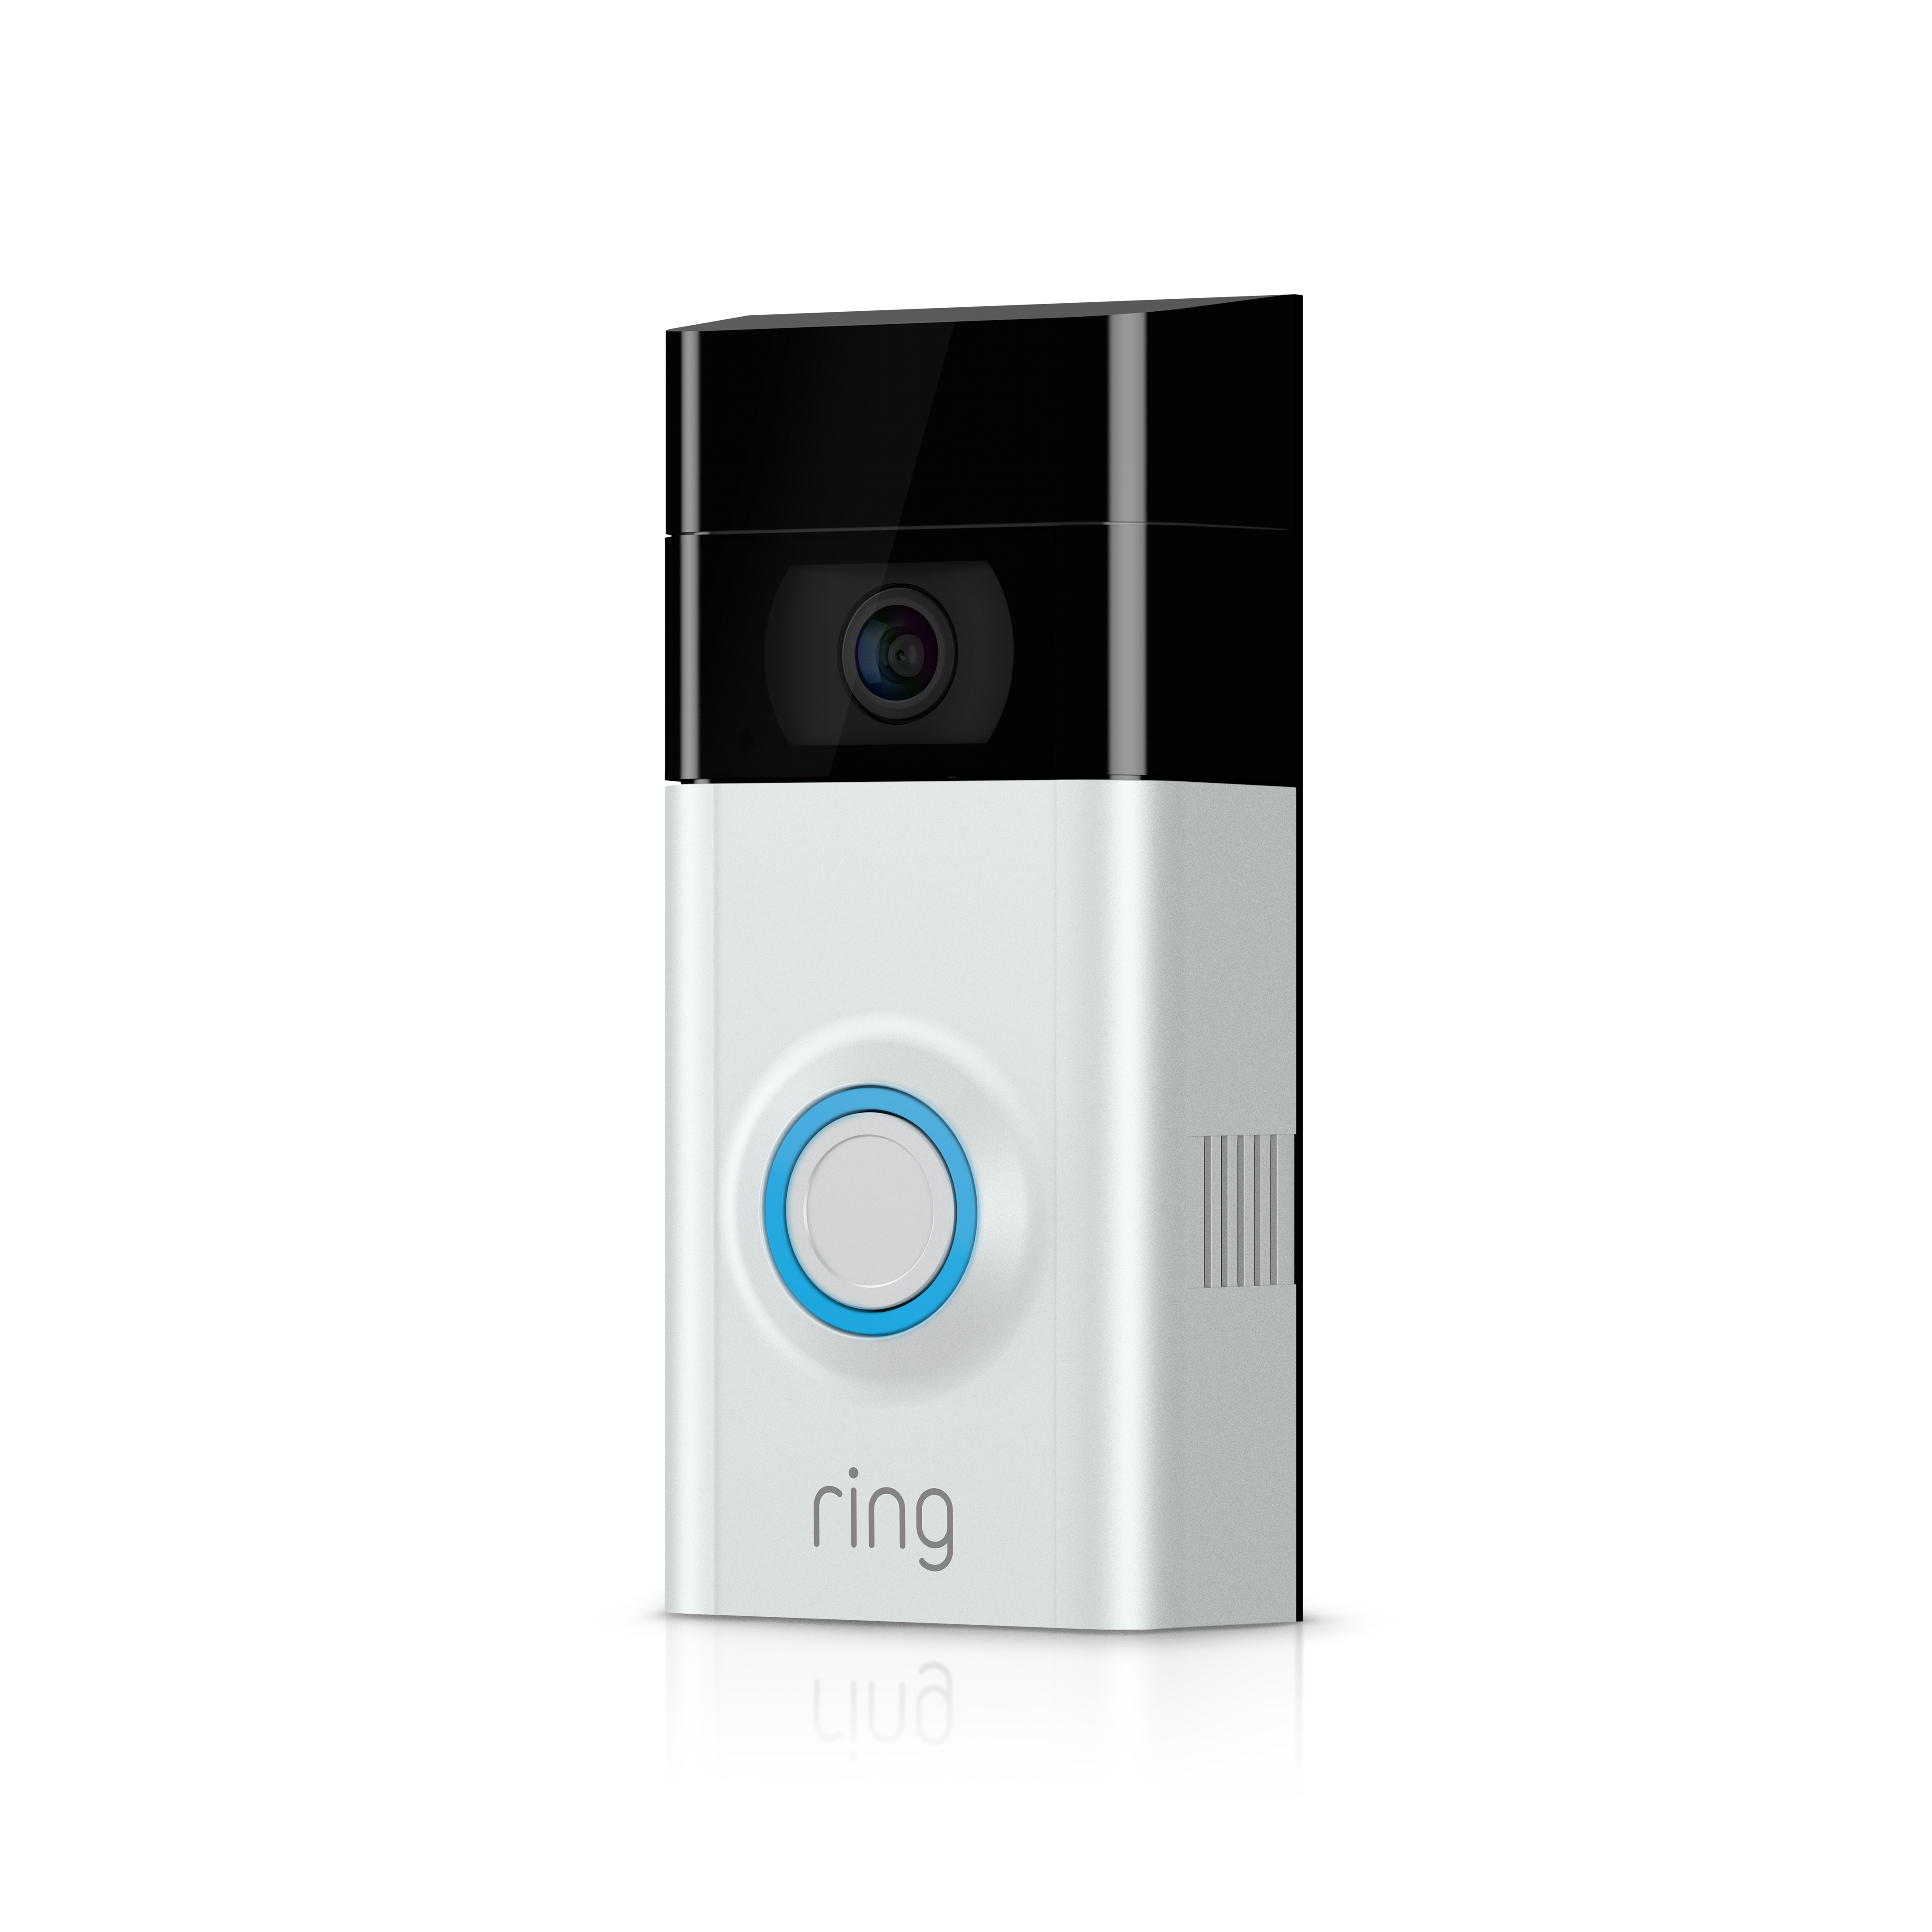 ring video doorbell package